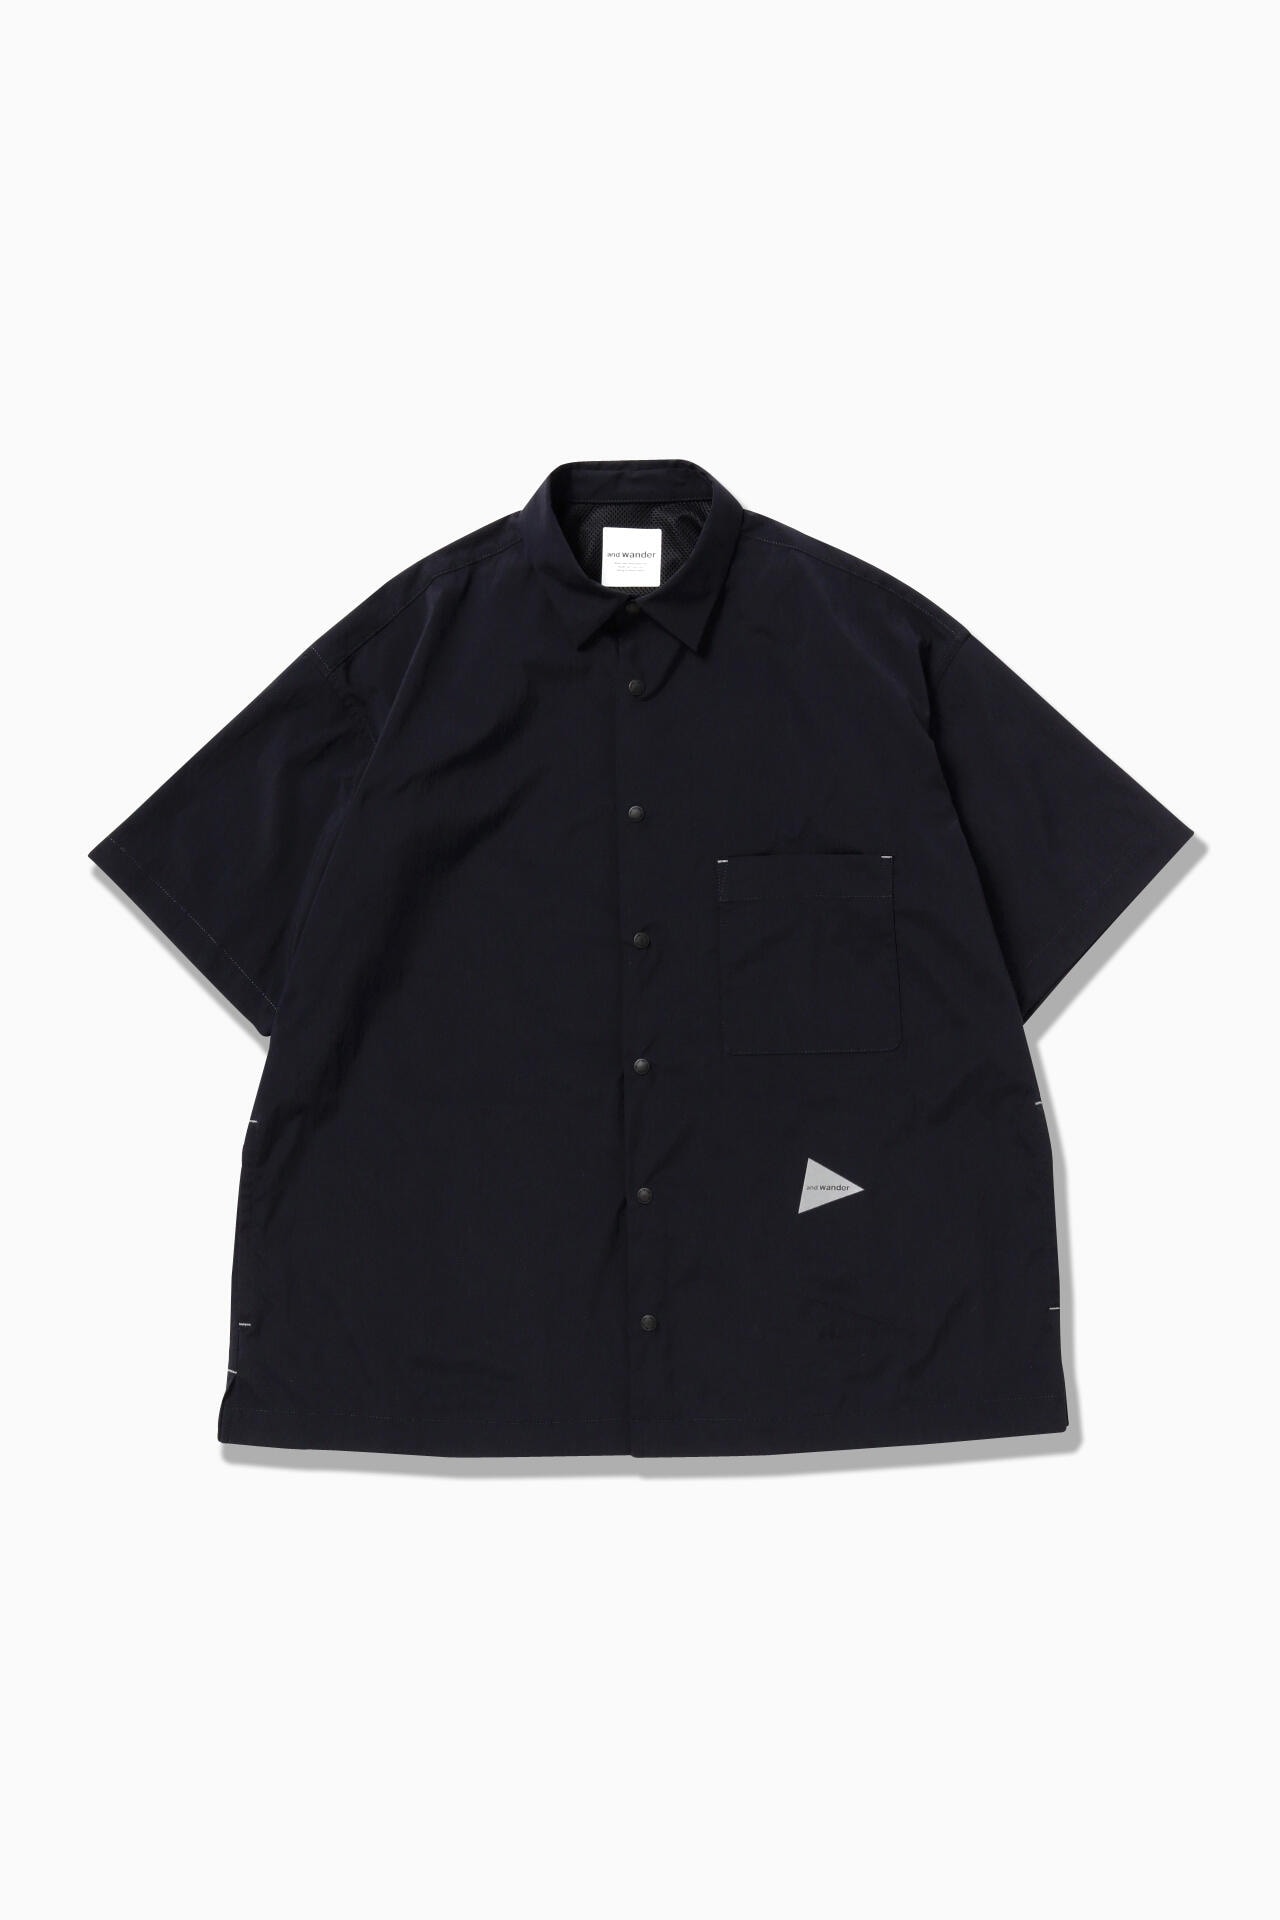 ソロキャンandwandor UV cut stretch SS shirt サイズXL